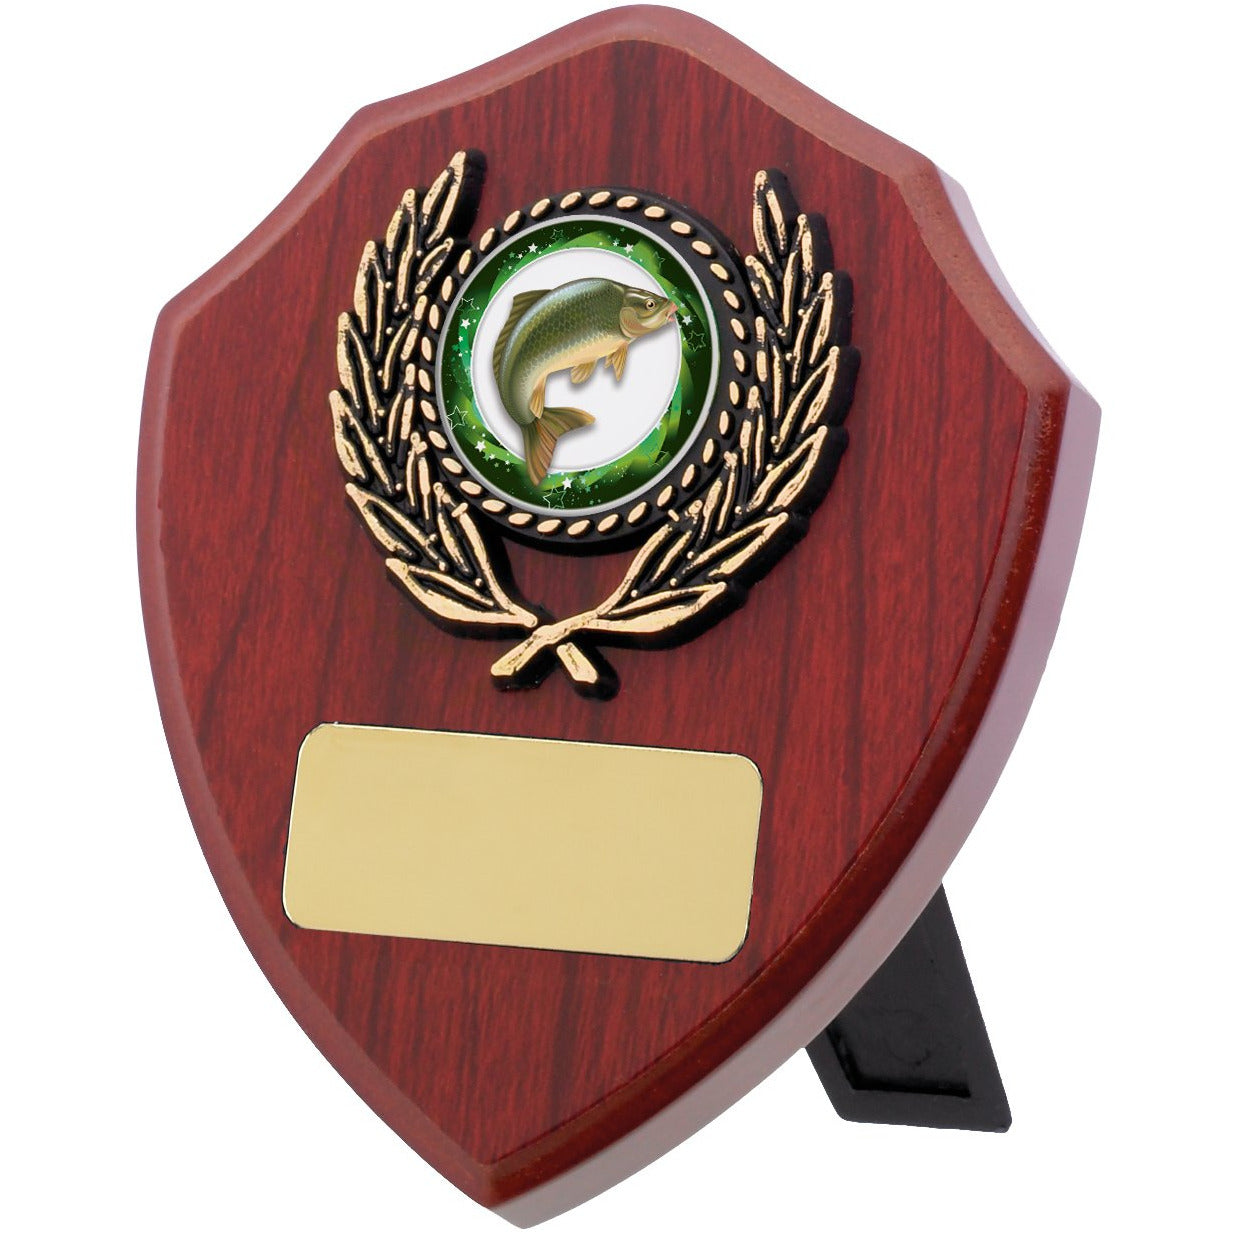 Mahogany Finish Shield Award